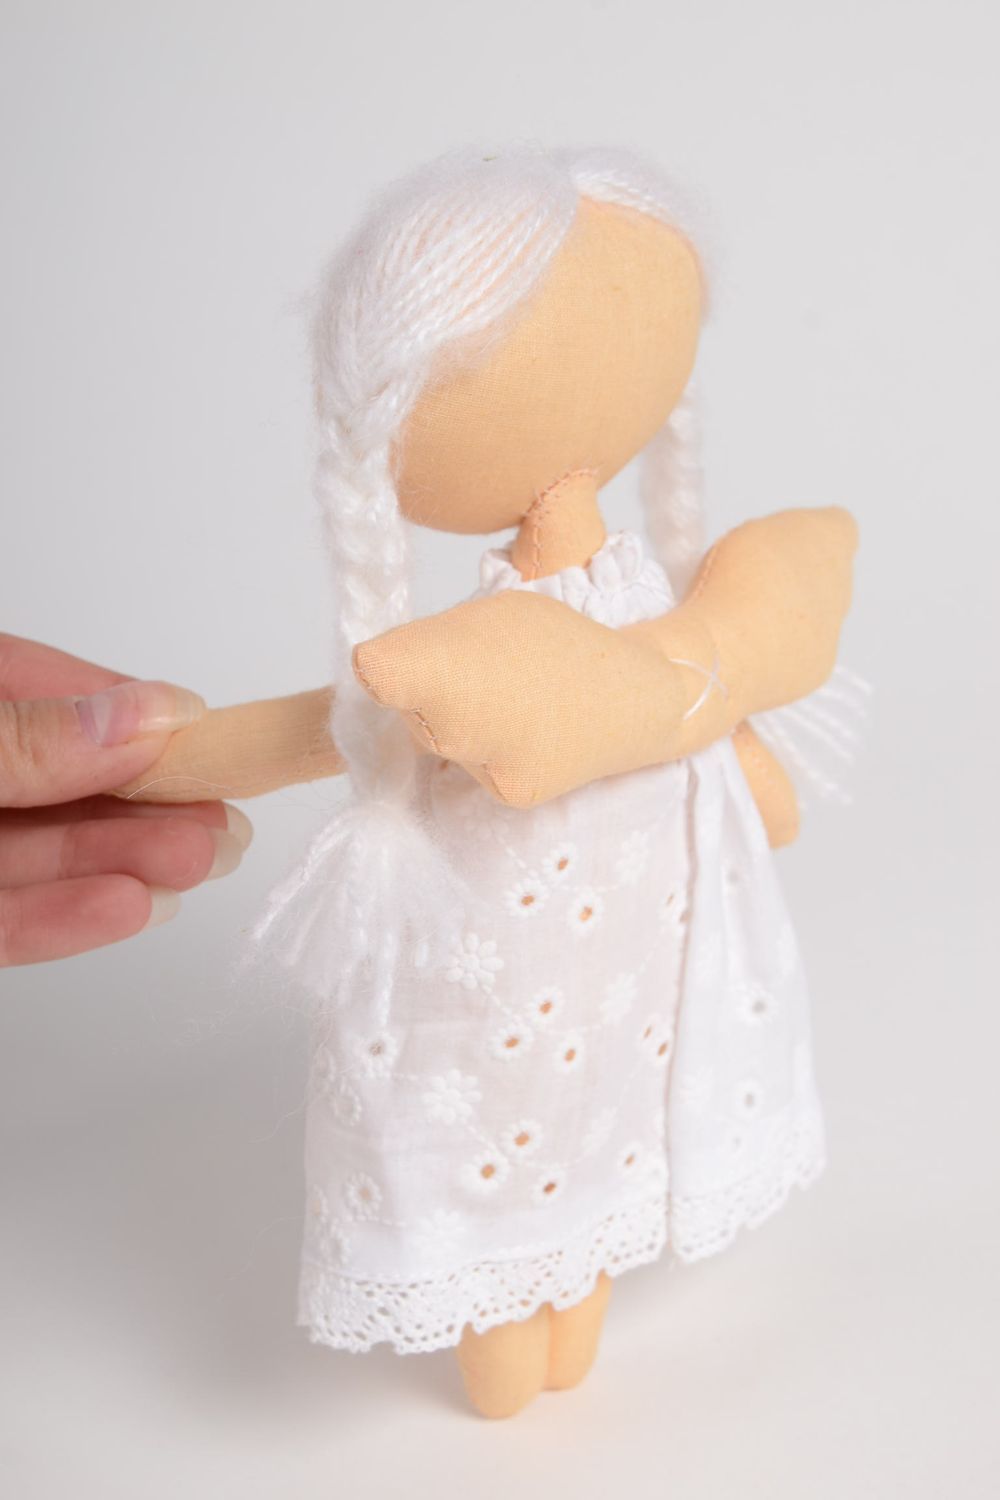 Мягкая игрушка ангел ручной работы игрушка для детей милая тряпичная кукла фото 4